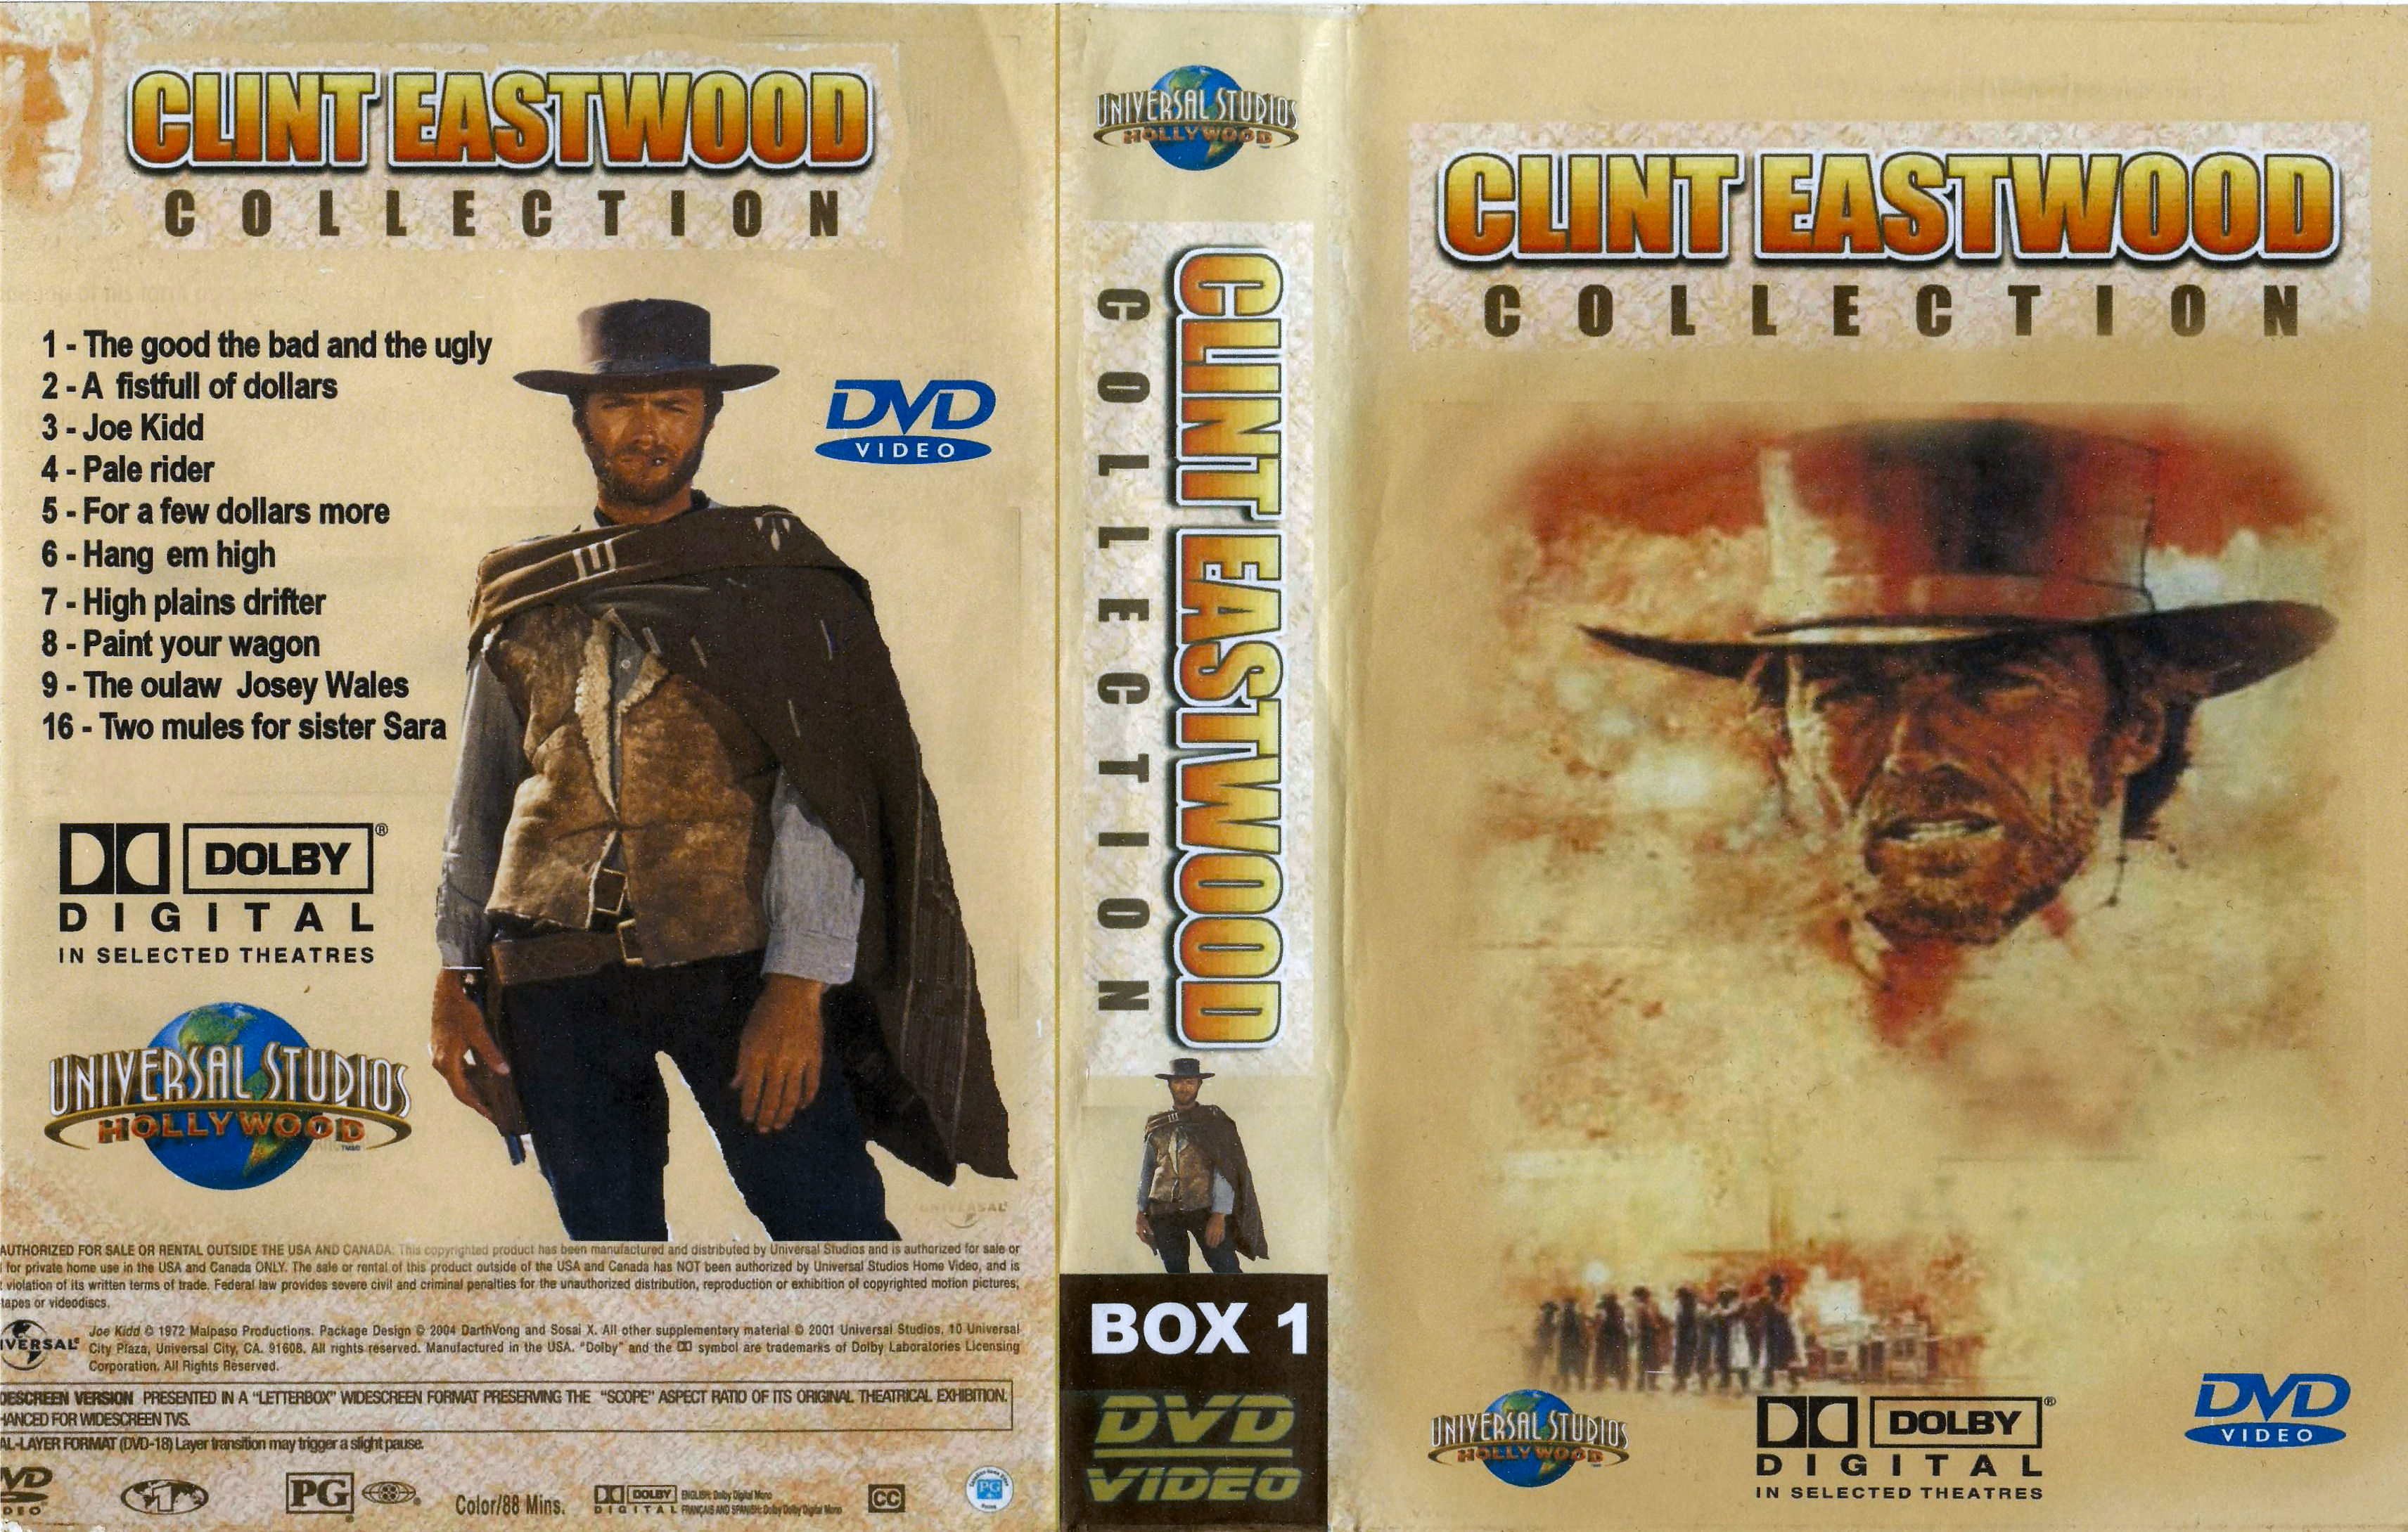 Clint Eastwood Collectie Box 1 DvD 5 van 10